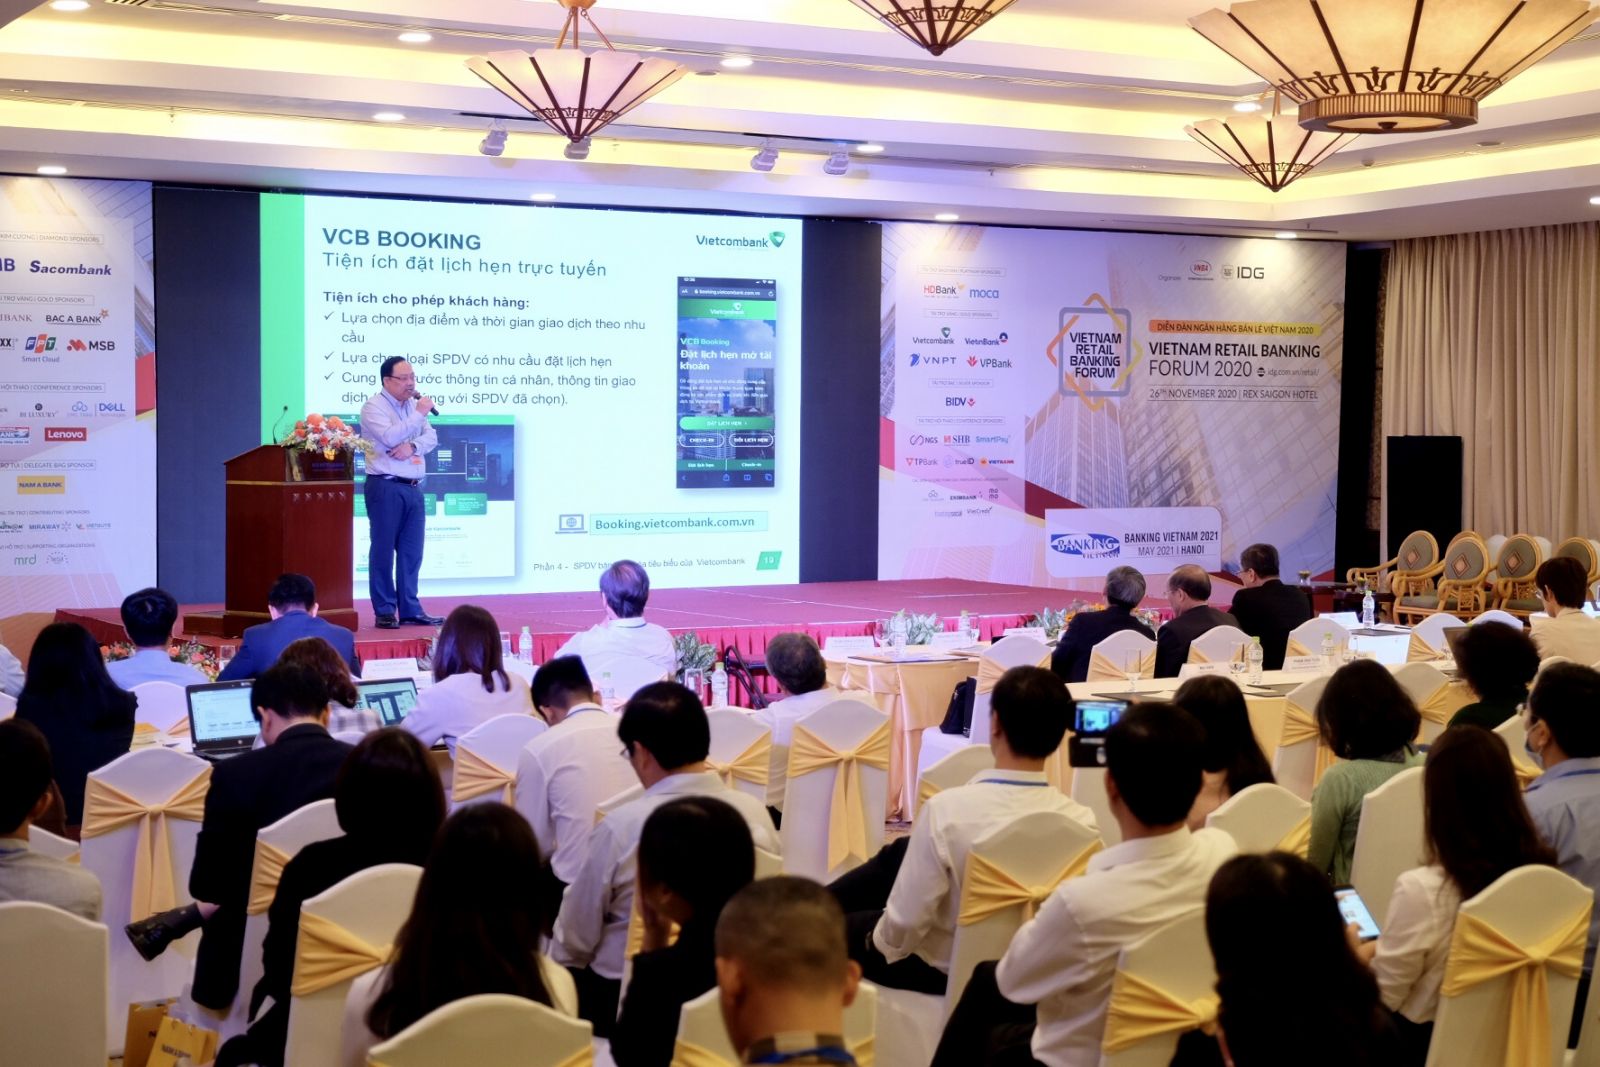 Ông Phạm Anh Tuấn – Thành viên Hội đồng quản trị Vietcombank trình bày tham luận, giới thiệu những tiện ích ngân hàng số của Vietcombank trong khuôn khổ Diễn đàn Ngân hàng Bán lẻ năm 2020